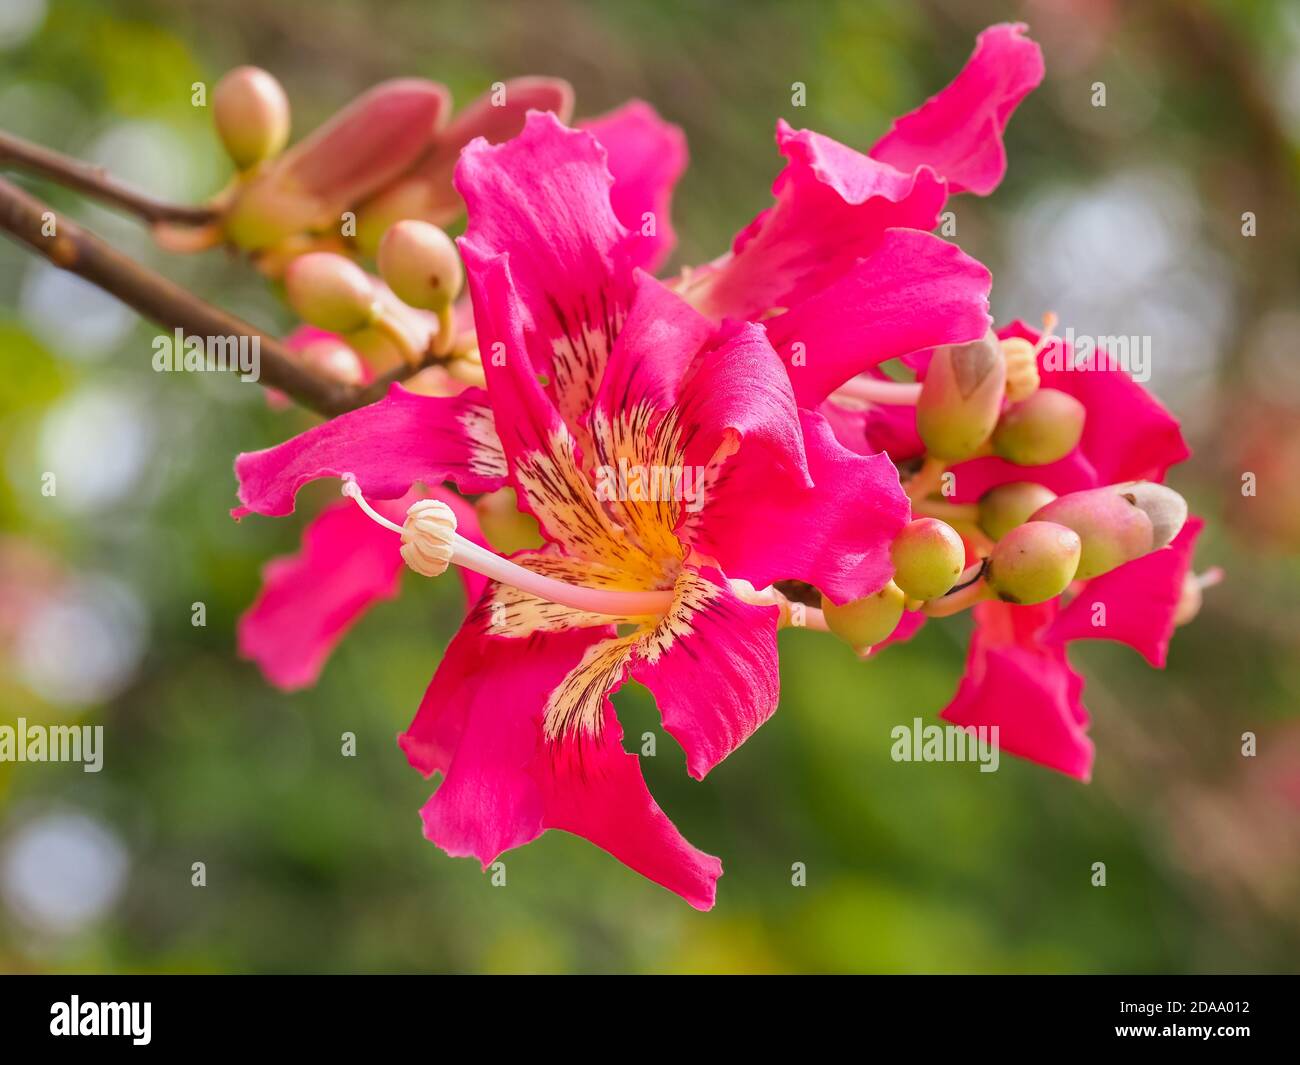 Seidenfloss Baum oder Ceiba speciosa Blume. Hibiskusförmige Blüte mit cremig-weißlicher Mitte und rosa Spitzen. Chorisia speciosa aus der Familie Malvaceae. Stockfoto